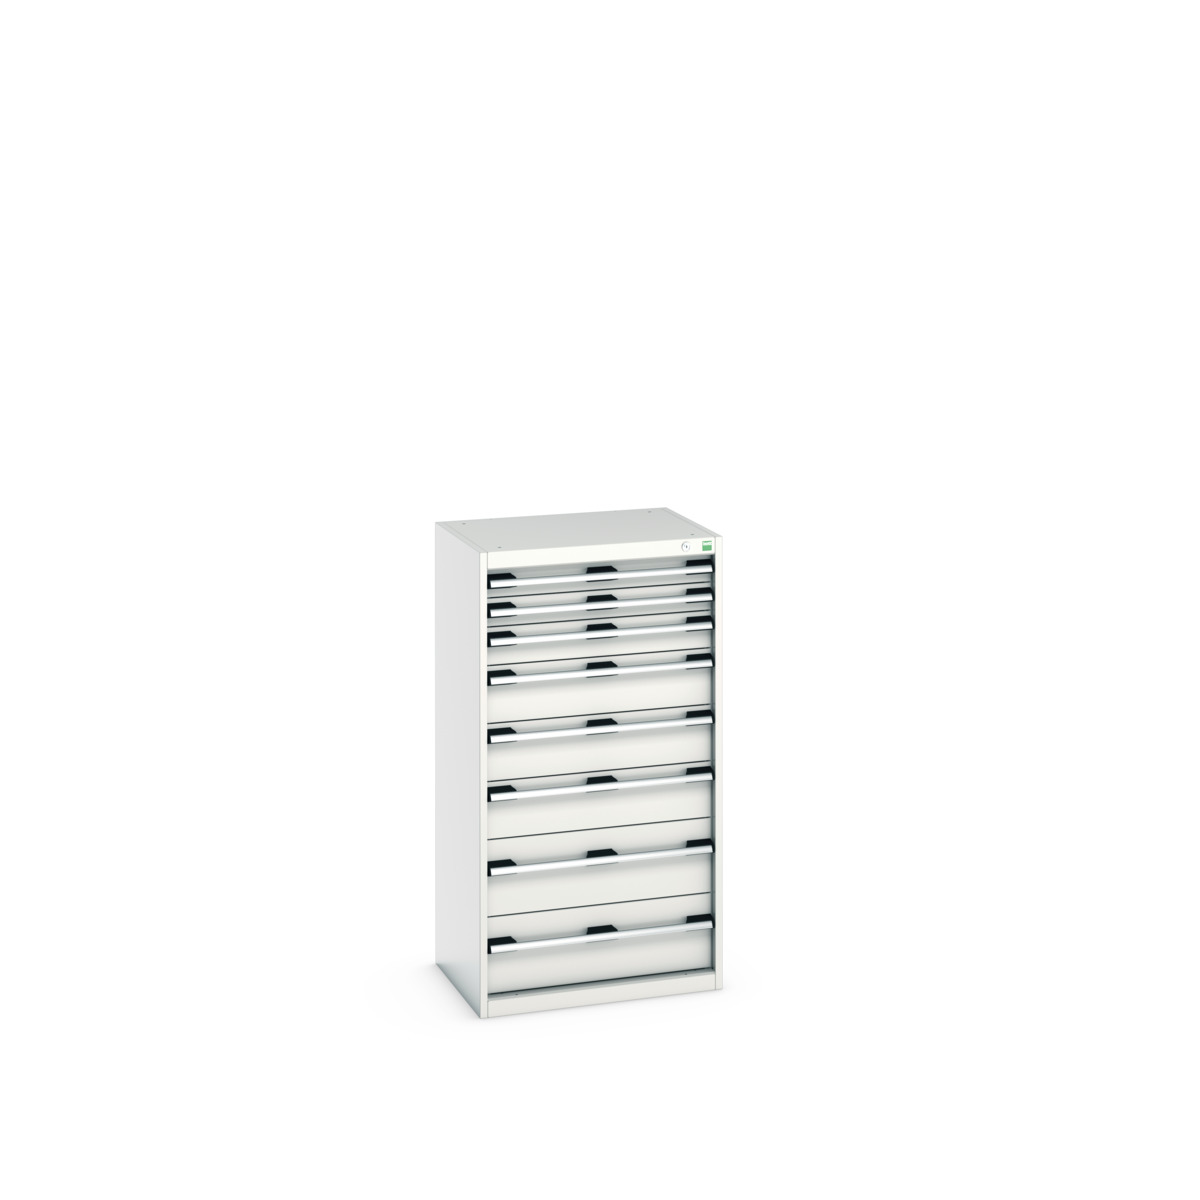 40011064.16V - cubio drawer cabinet